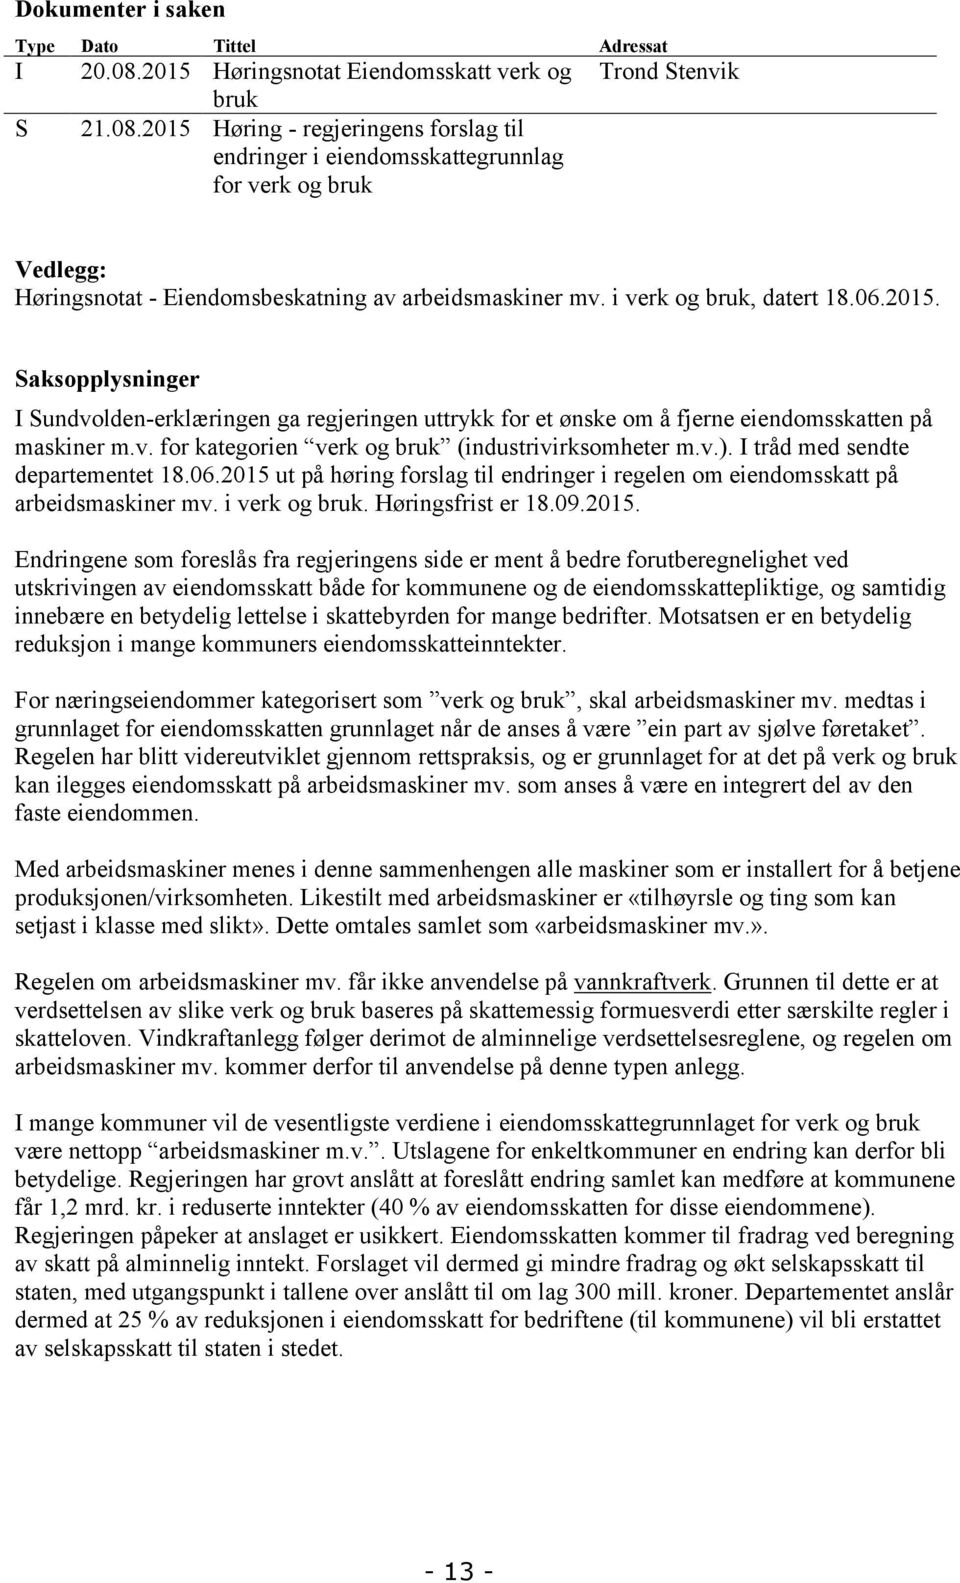 2015 Høring - regjeringens forslag til endringer i eiendomsskattegrunnlag for verk og bruk Trond Stenvik Vedlegg: Høringsnotat - Eiendomsbeskatning av arbeidsmaskiner mv. i verk og bruk, datert 18.06.